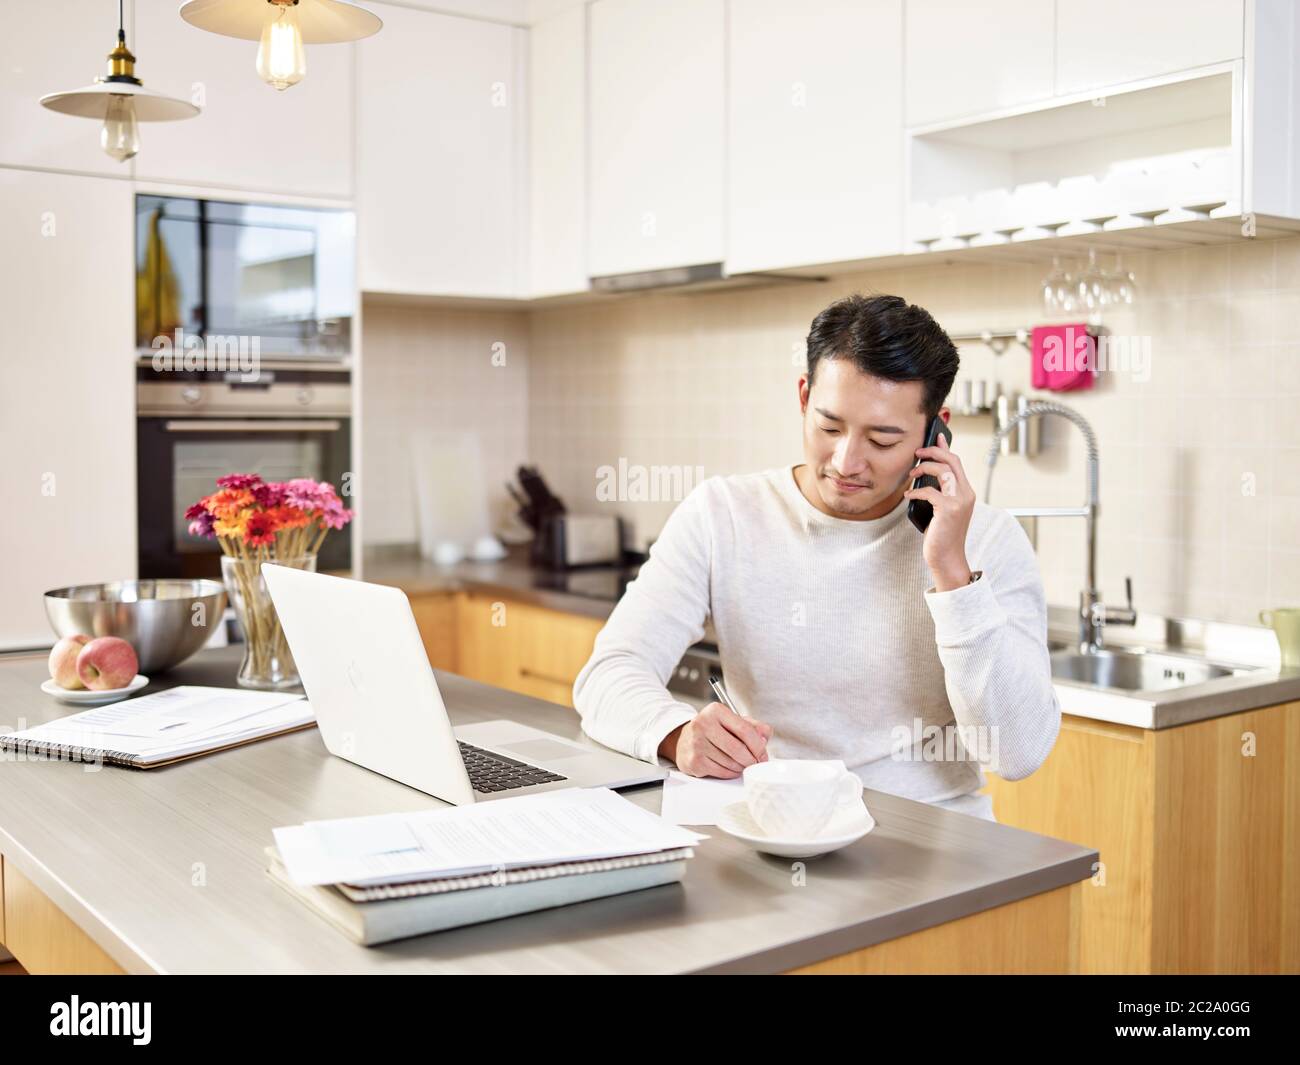 jeune homme d'affaires asiatique assis cuisine comptoir travaillant à la maison parlant sur téléphone portable Banque D'Images